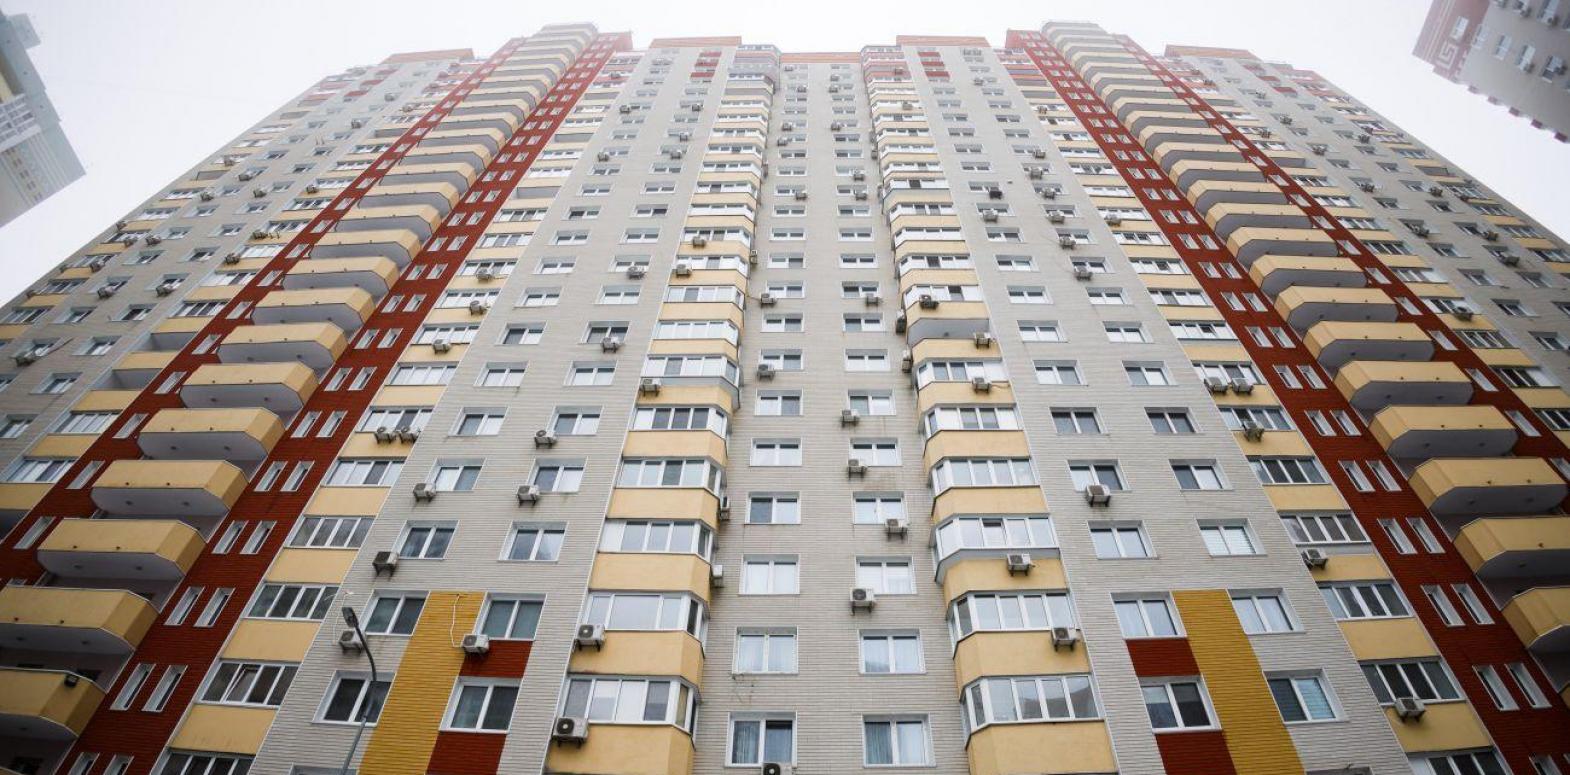 Цены на жилье в Украине за год выросли более чем на 15%: какие квартиры дорожали быстрее